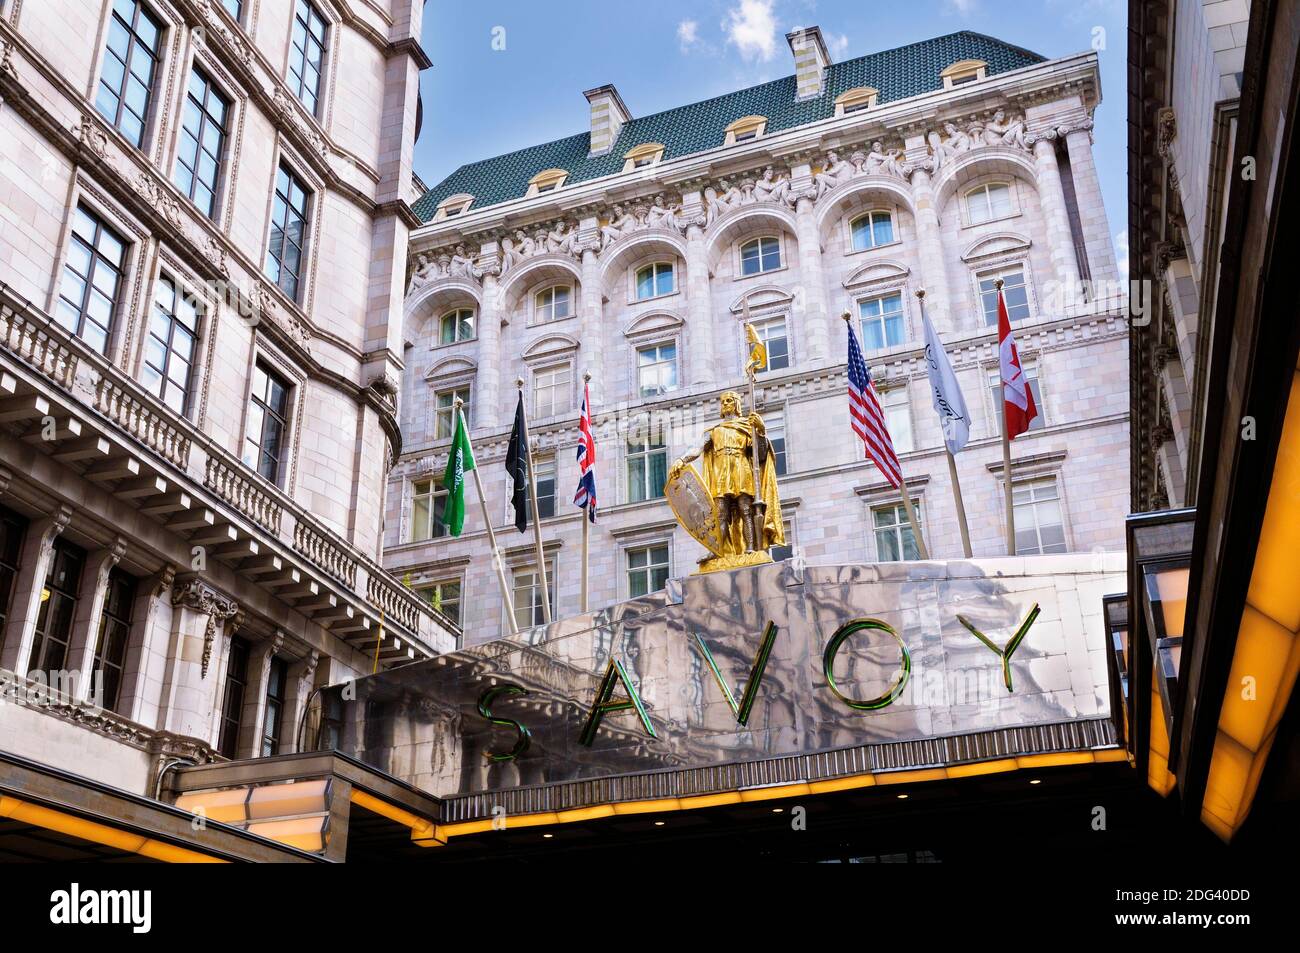 The Savoy Hotel, Londres, Angleterre, Royaume-Uni. Statue dorée de Pierre II Comte de Savoie à côté des drapeaux au-dessus de l'entrée du célèbre hôtel de luxe 5 étoiles. Banque D'Images